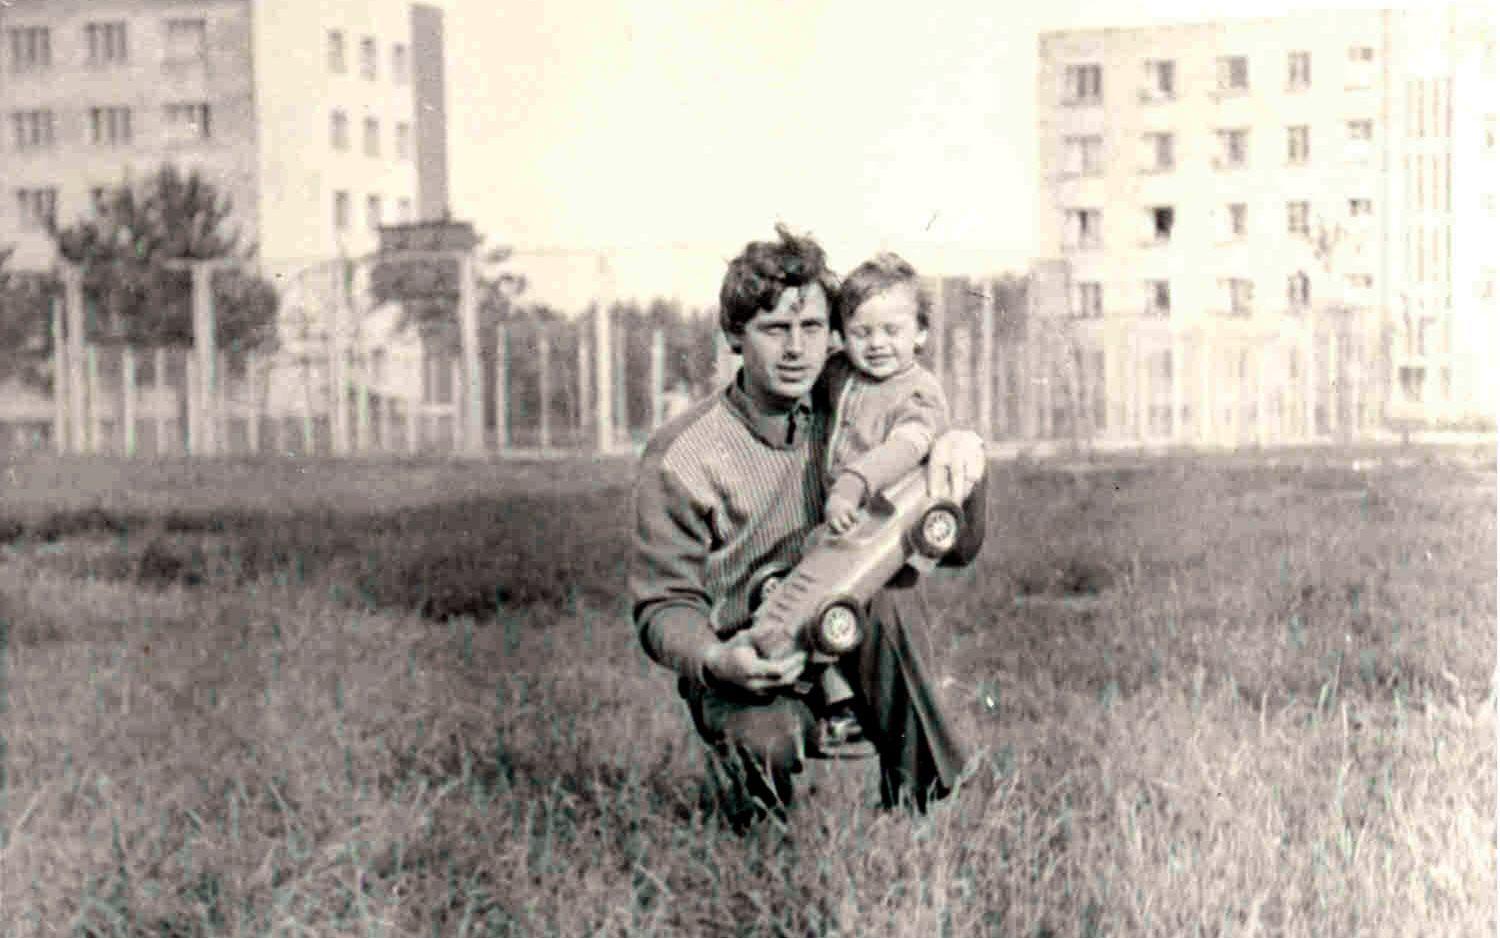 Volodymyr Shashenok jobbade som tekniker på Tjernobyl. Han dog bara fyra timmer efter olyckan.